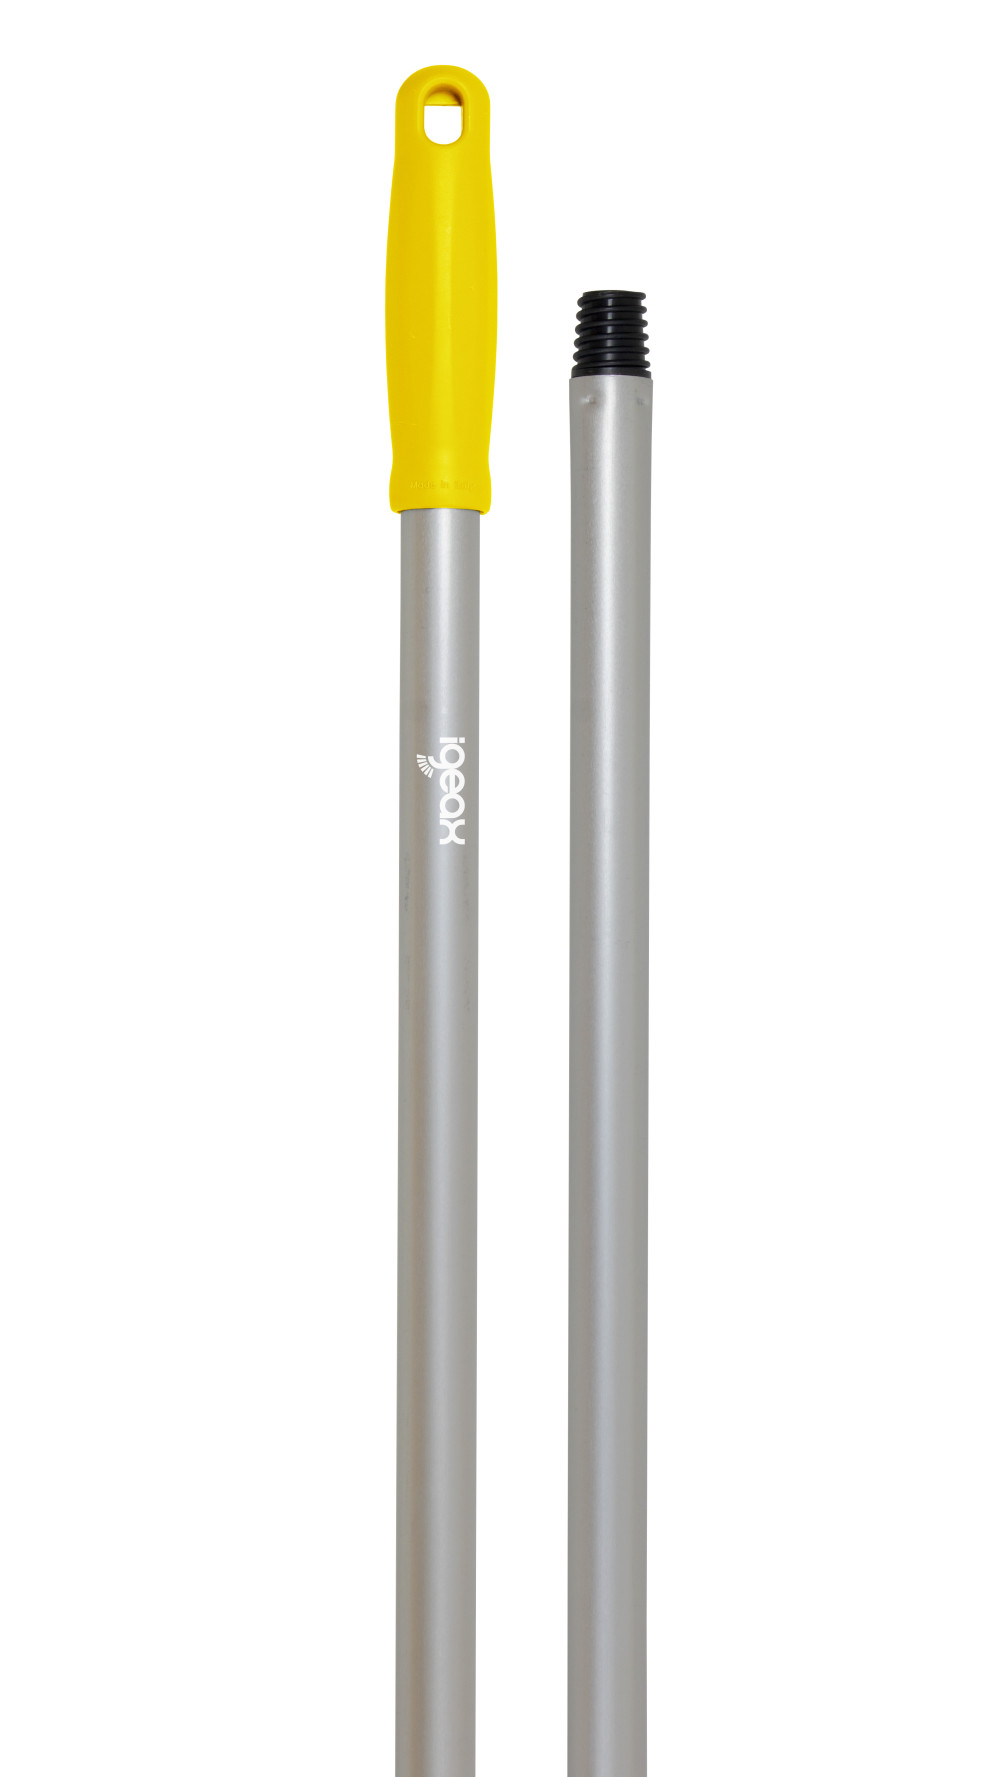 Igeax Aluminium nyél menetes 140cm-es 23,5 mm vastag sárga